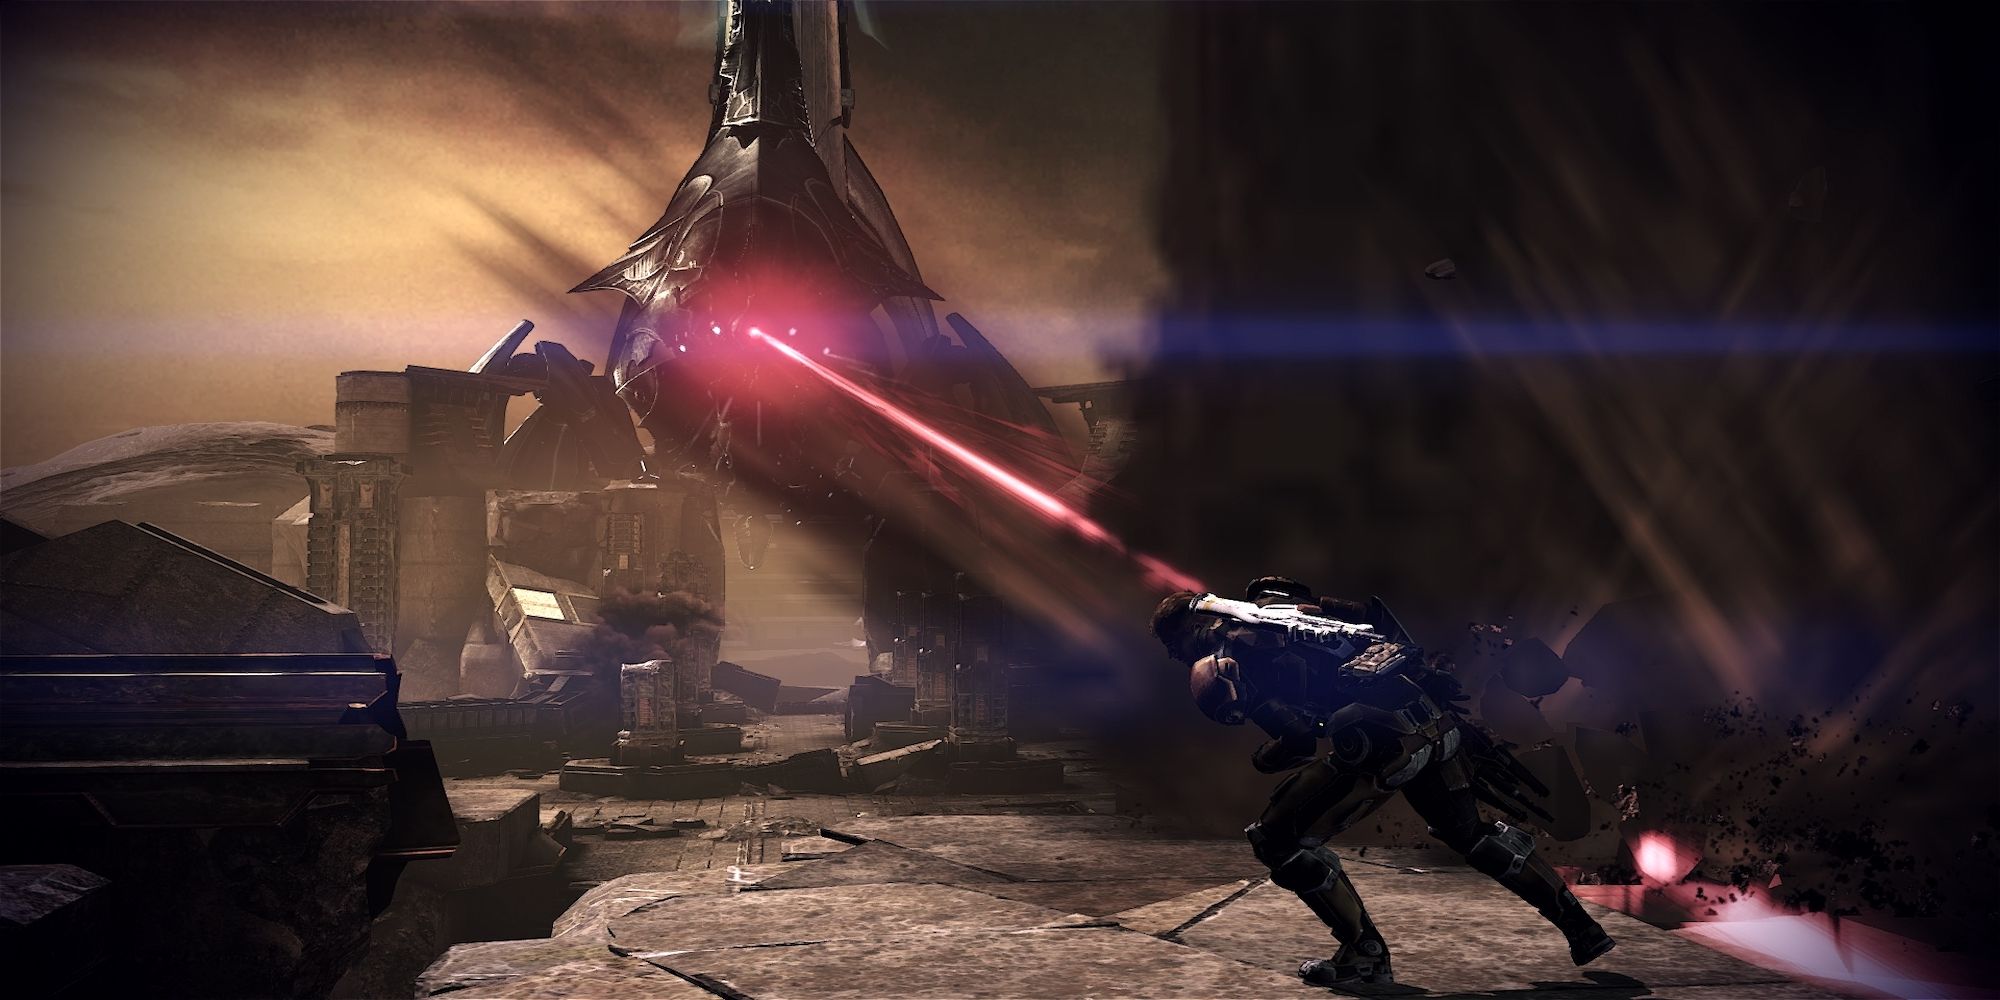 A reaper on Tuchanka in Mass Effect 3.